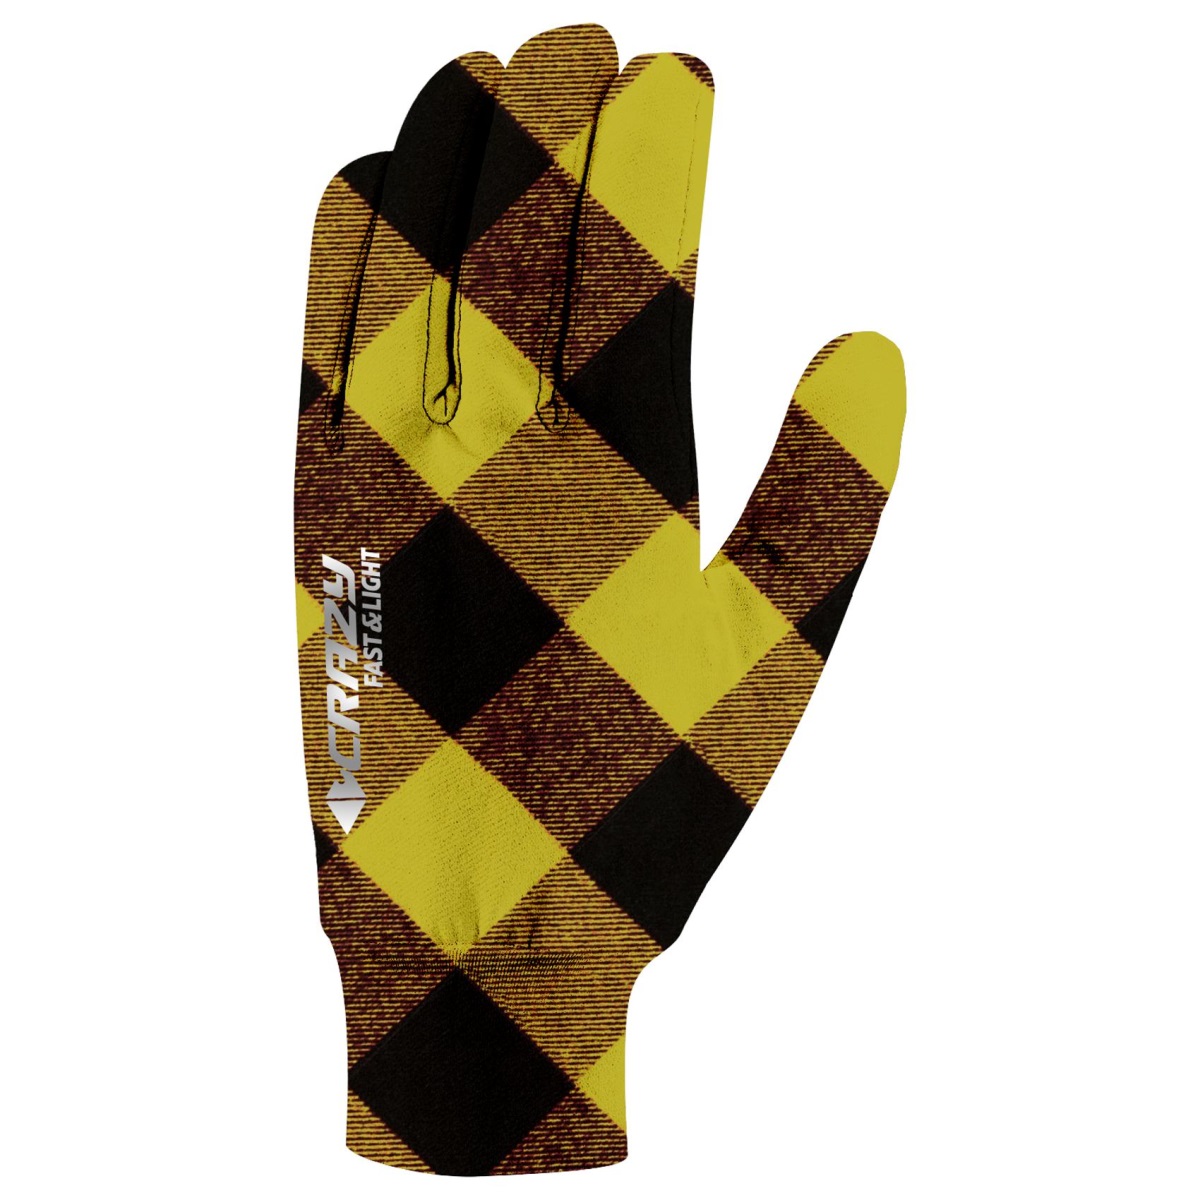 Běžecké rukavice Crazy Glove Touch Print Liken scottish XL-XXL